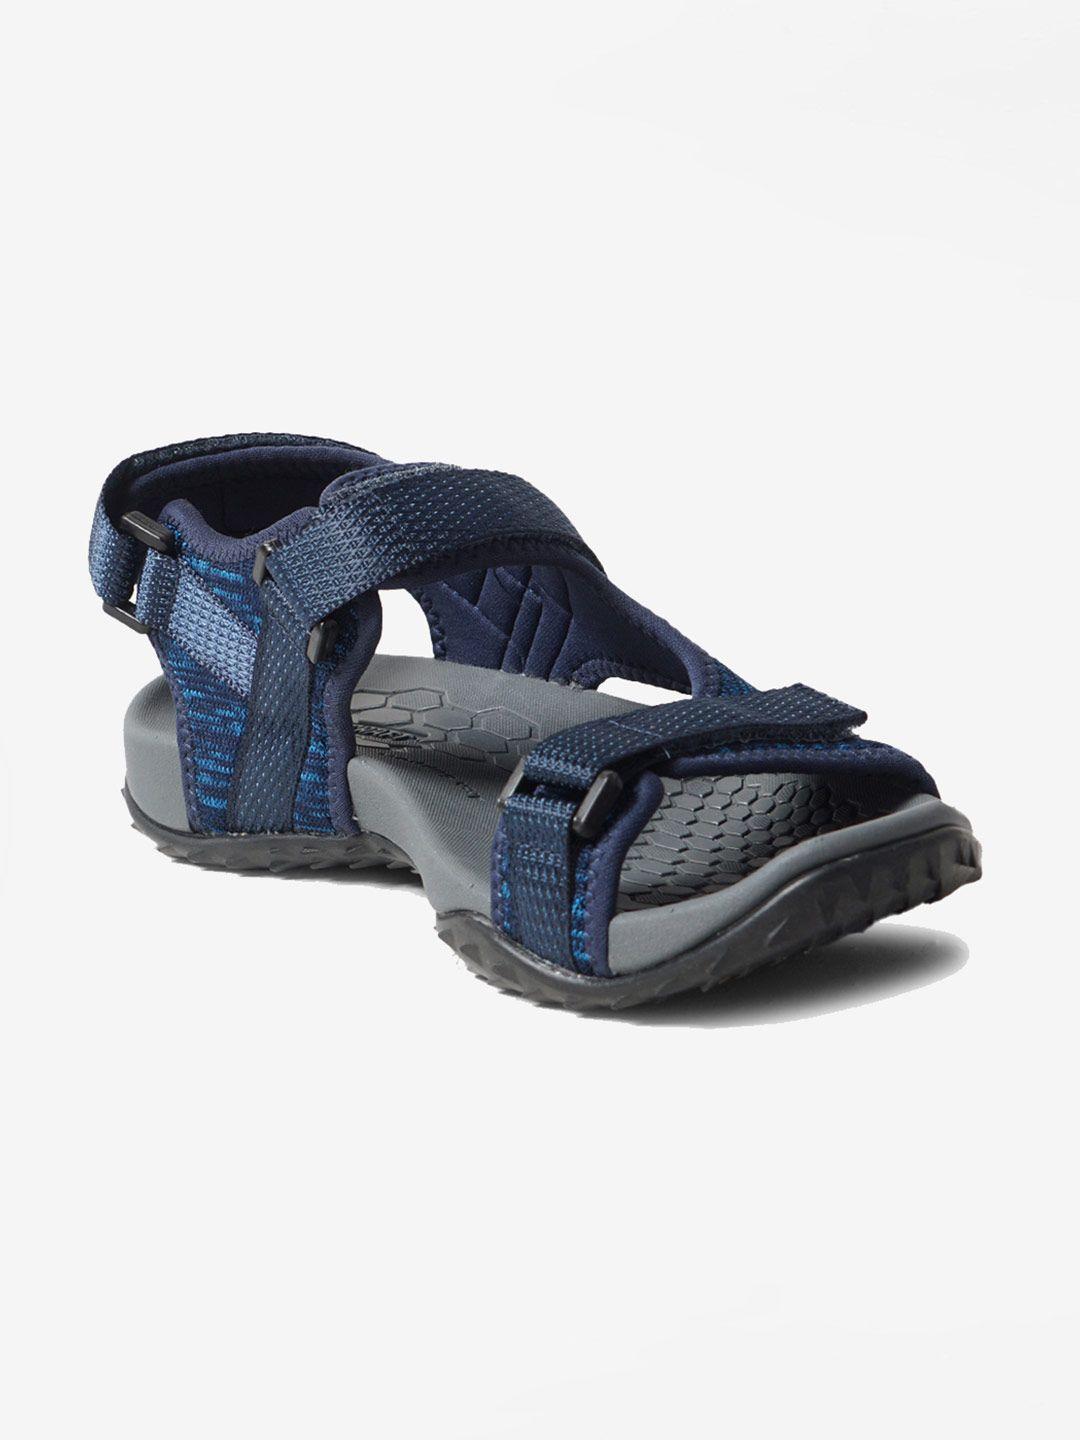 wildcraft men hypaflex technology comfort sandals